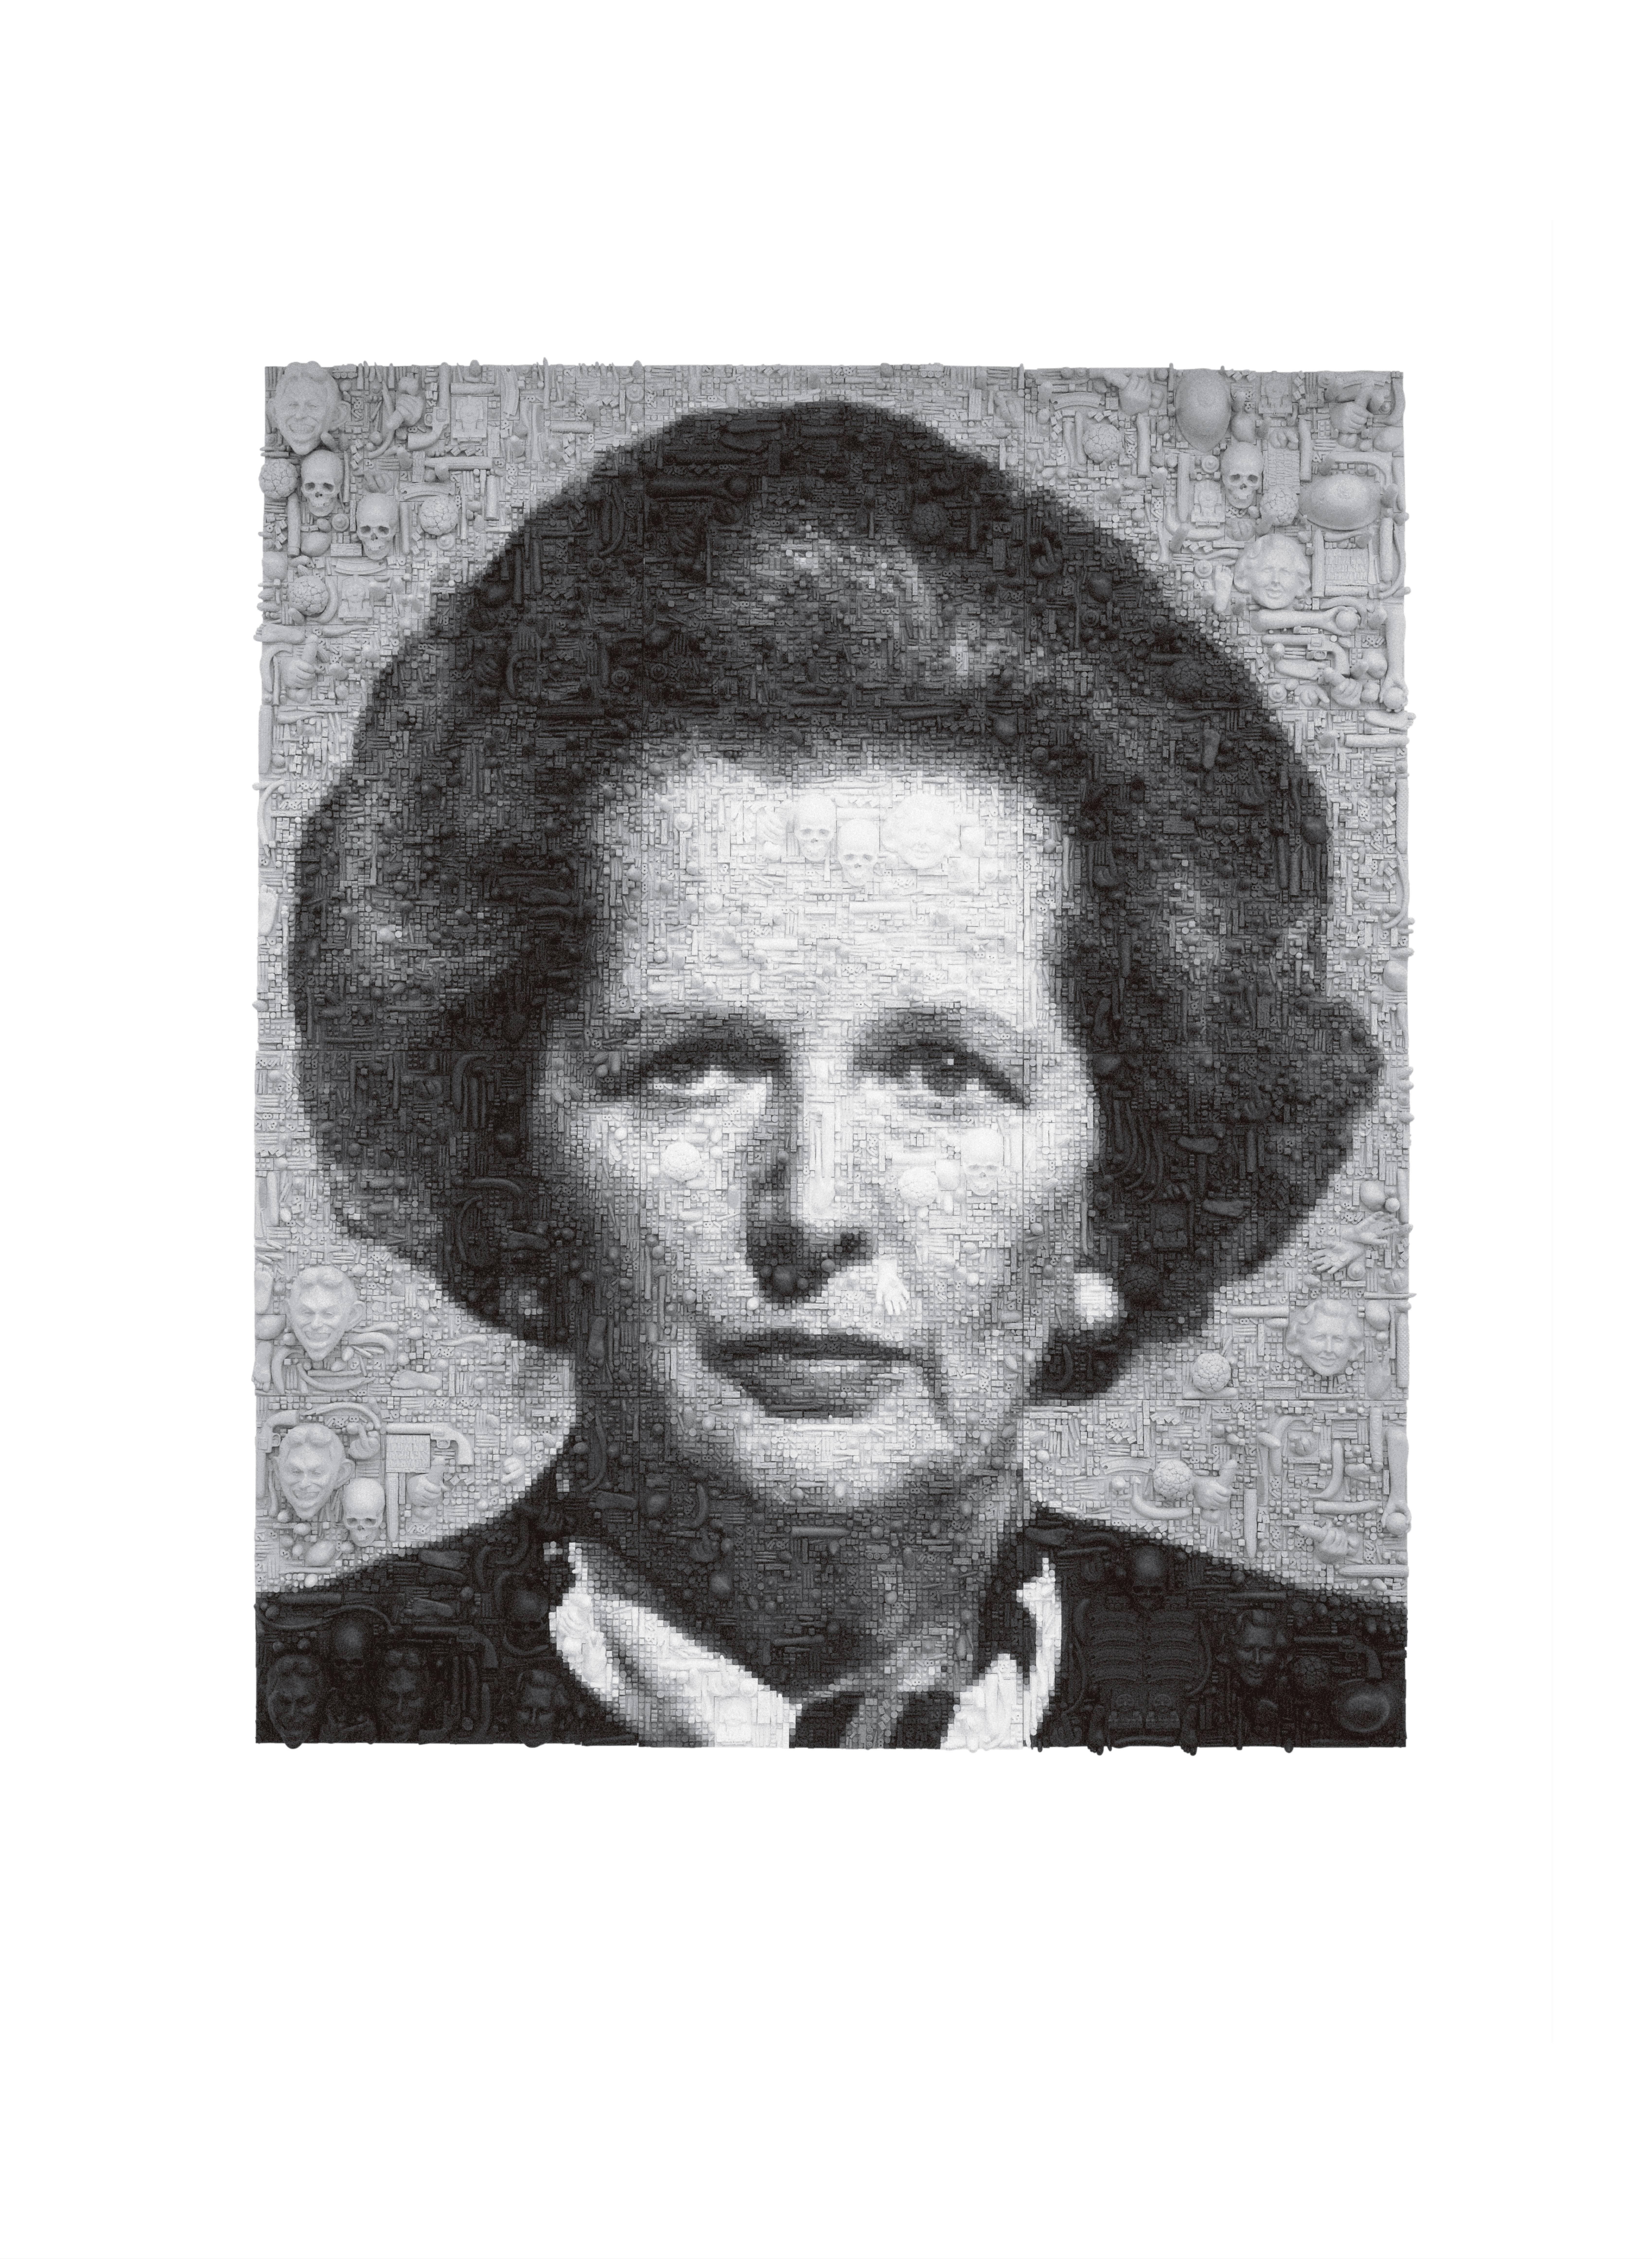 En 2009, l'artiste YBA Marcus Harvey a peint l'une des rares représentations contemporaines du Premier ministre Margaret Thatcher. Il a été réalisé dans un style similaire à celui de son œuvre la plus connue  "Myra" (1995) : un portrait en noir et